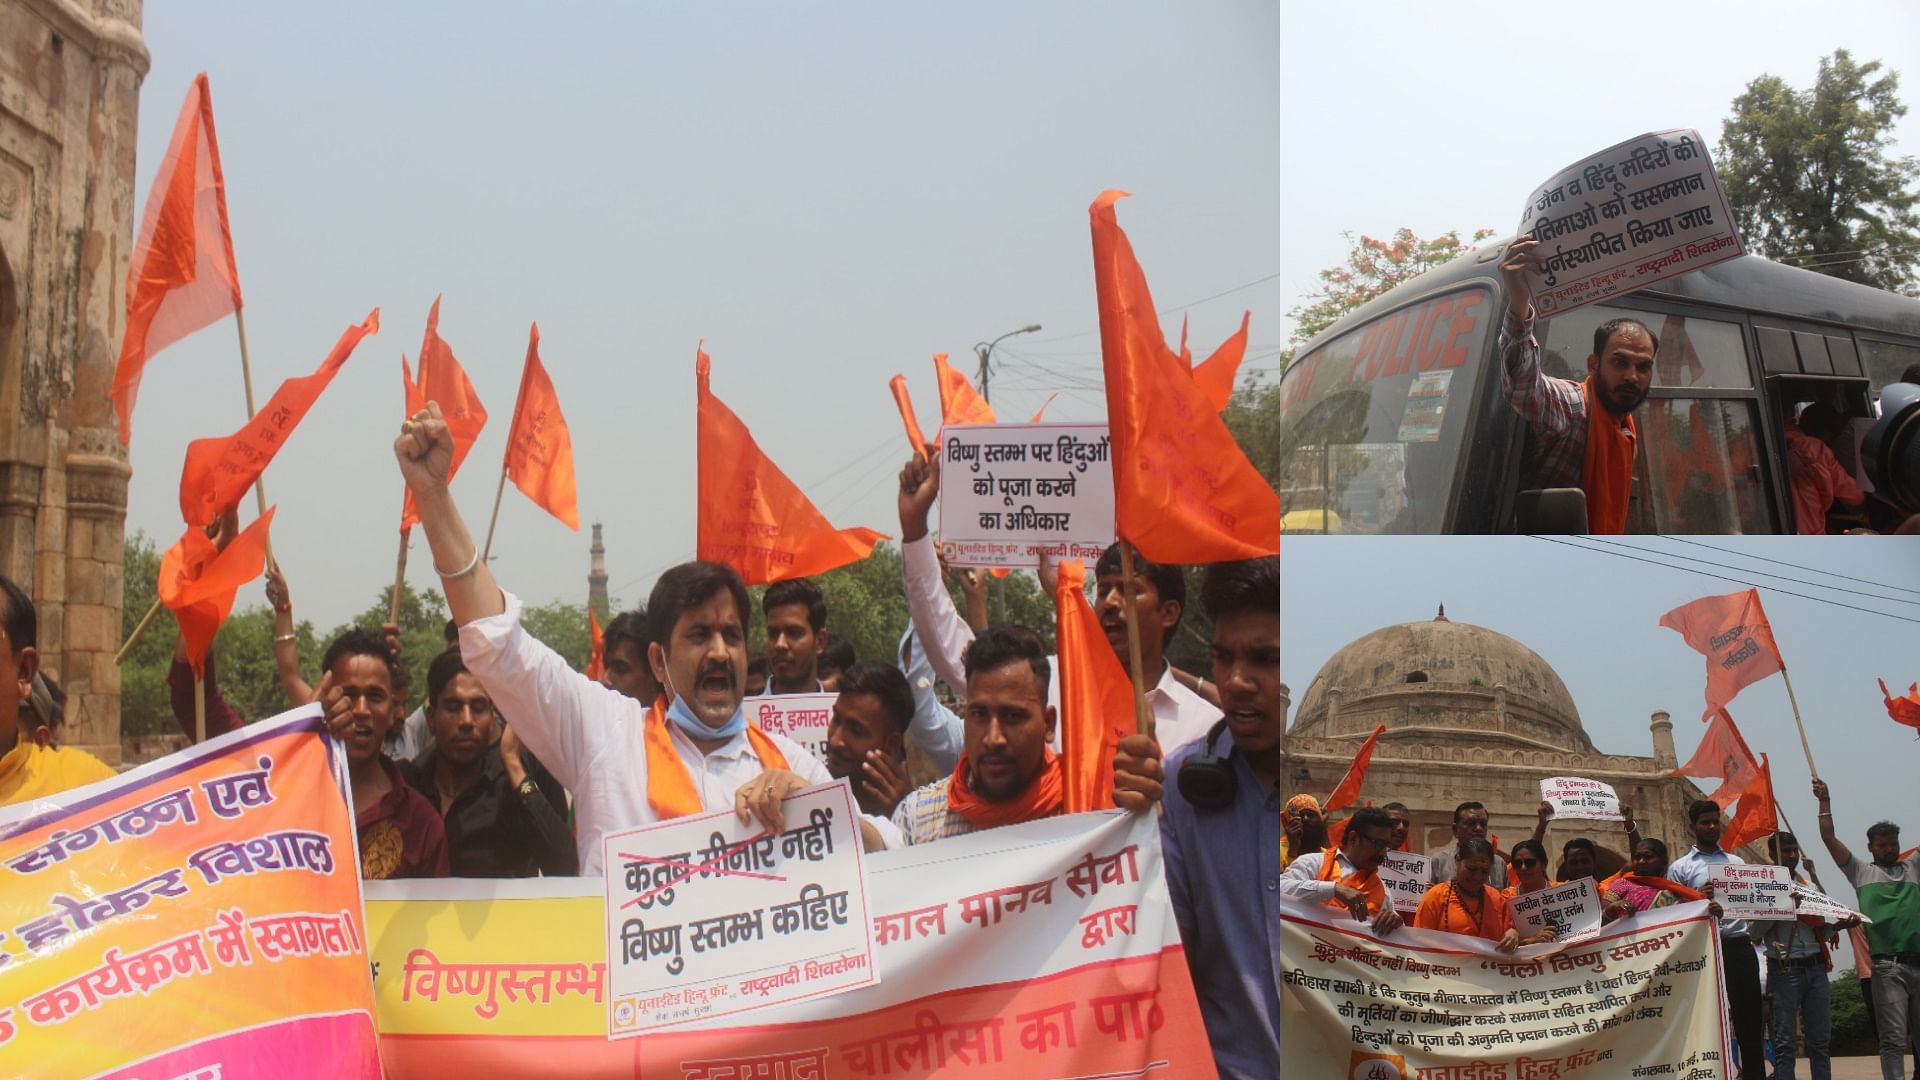 कुतुब मीनार नहीं 'विष्णु स्तंभ': हिंदू संगठन महाकाल मानव सेवा की मांग, मीनार  का बदलो नाम